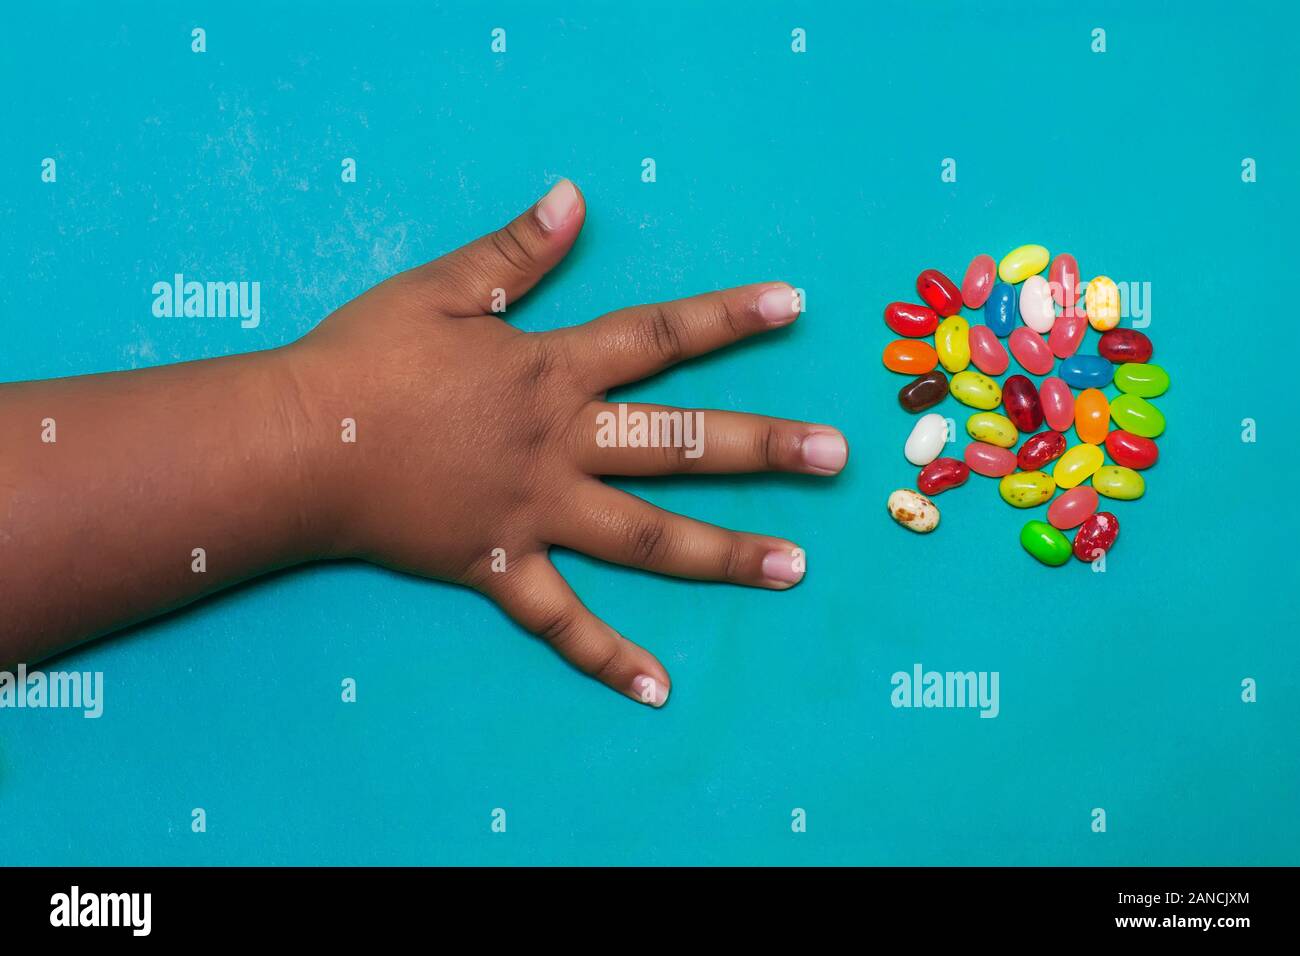 Un mini bras et sa main avec les doigts répartis sur le point d'attraper des bonbons aux fruits d'une petite portion. Banque D'Images